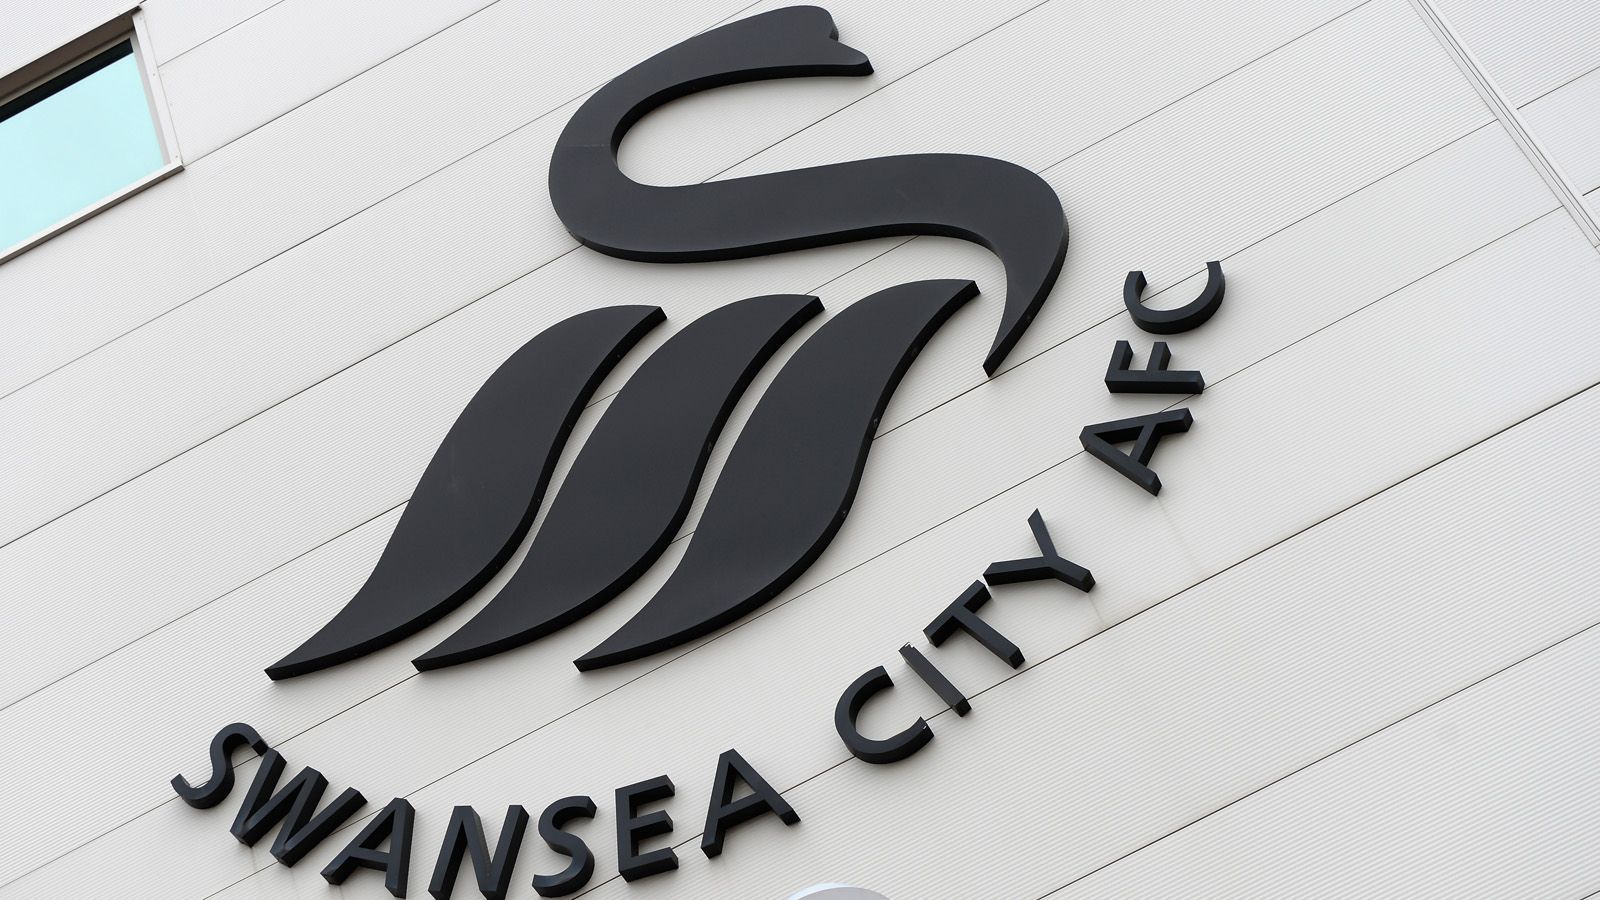 
                <strong>Swansea City</strong><br>
                Umsatz: 144,64 Mio. EuroLohnkosten: 102,83 Mio. EuroVerlust vor Steuern: 3,39 Mio. Euro
              